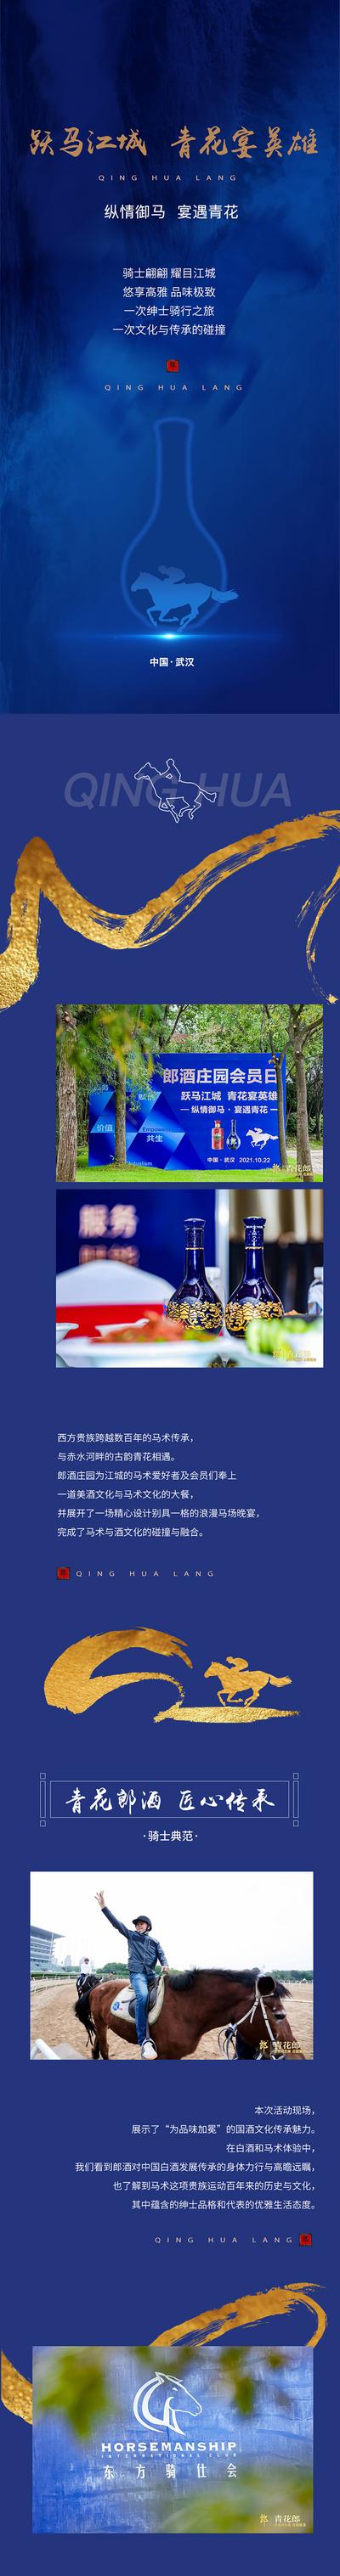 南门网 专题设计 长图 郎酒 白酒 简洁 大气 东方传承 品味 典藏